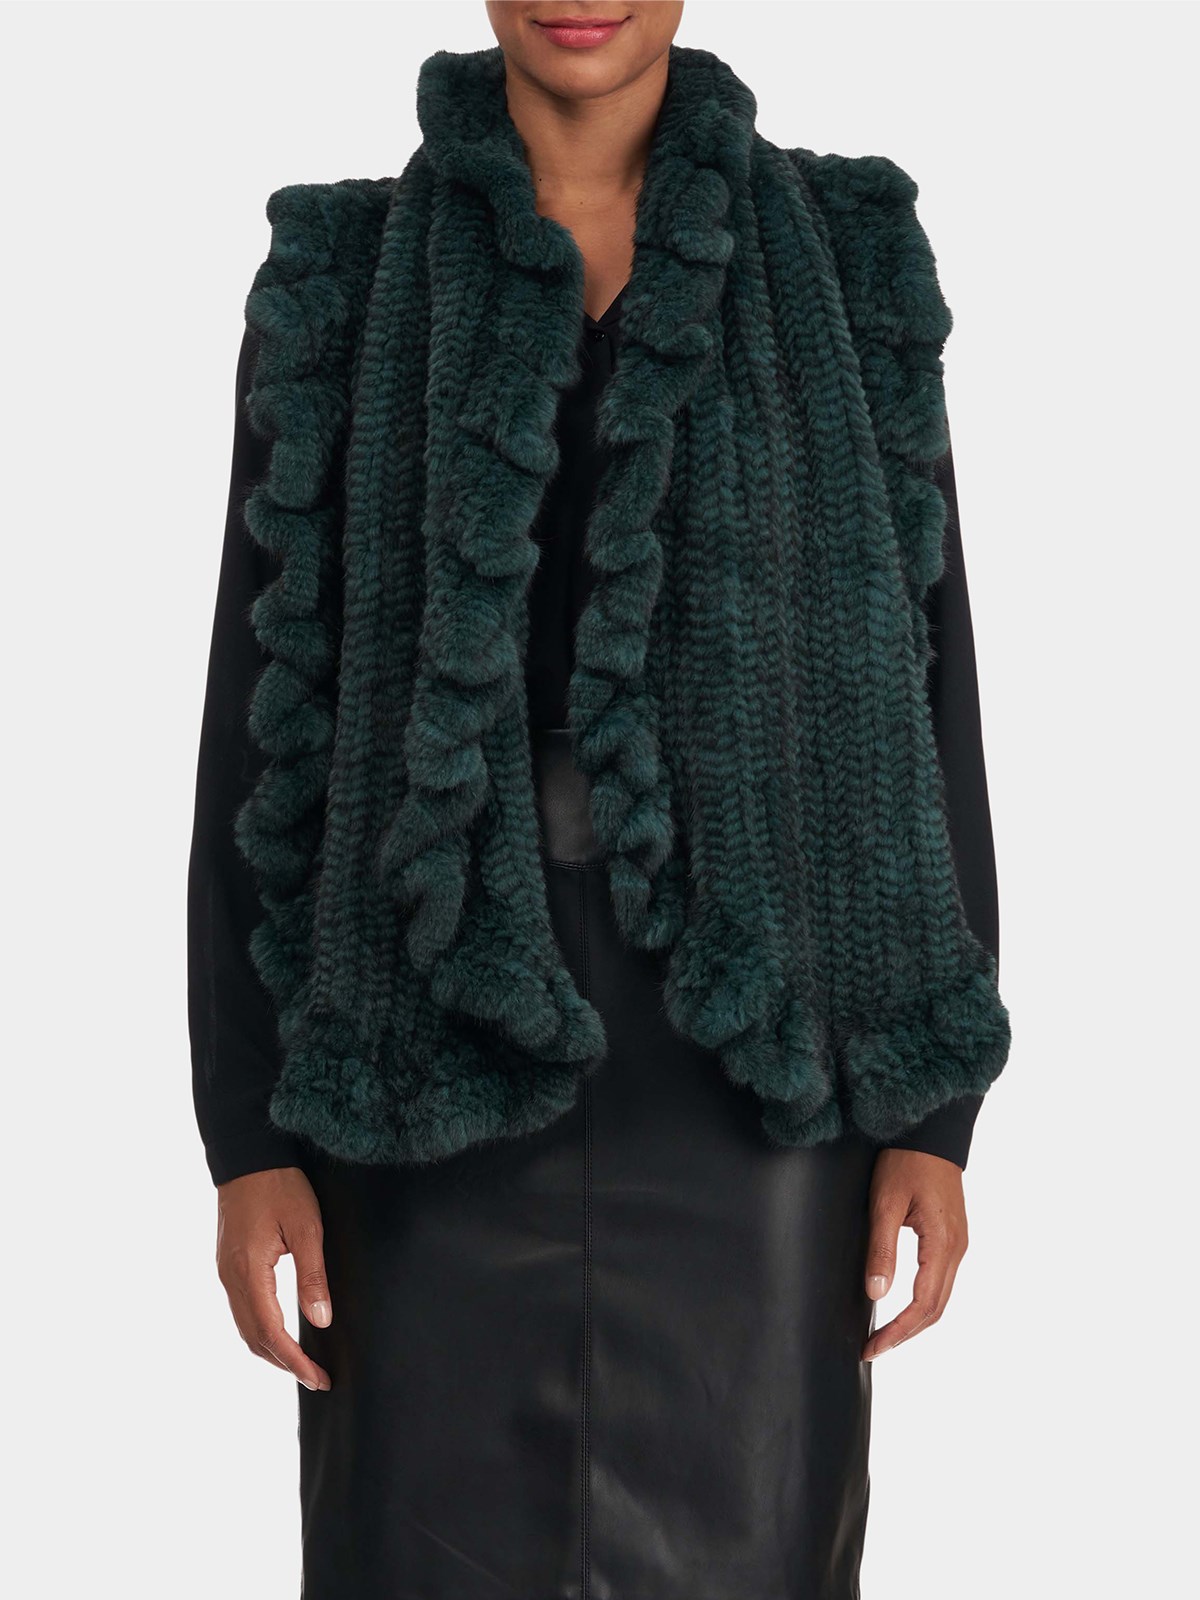 Woman's Emerald T-Cut Knit Mink Fur Ruffle Shawl